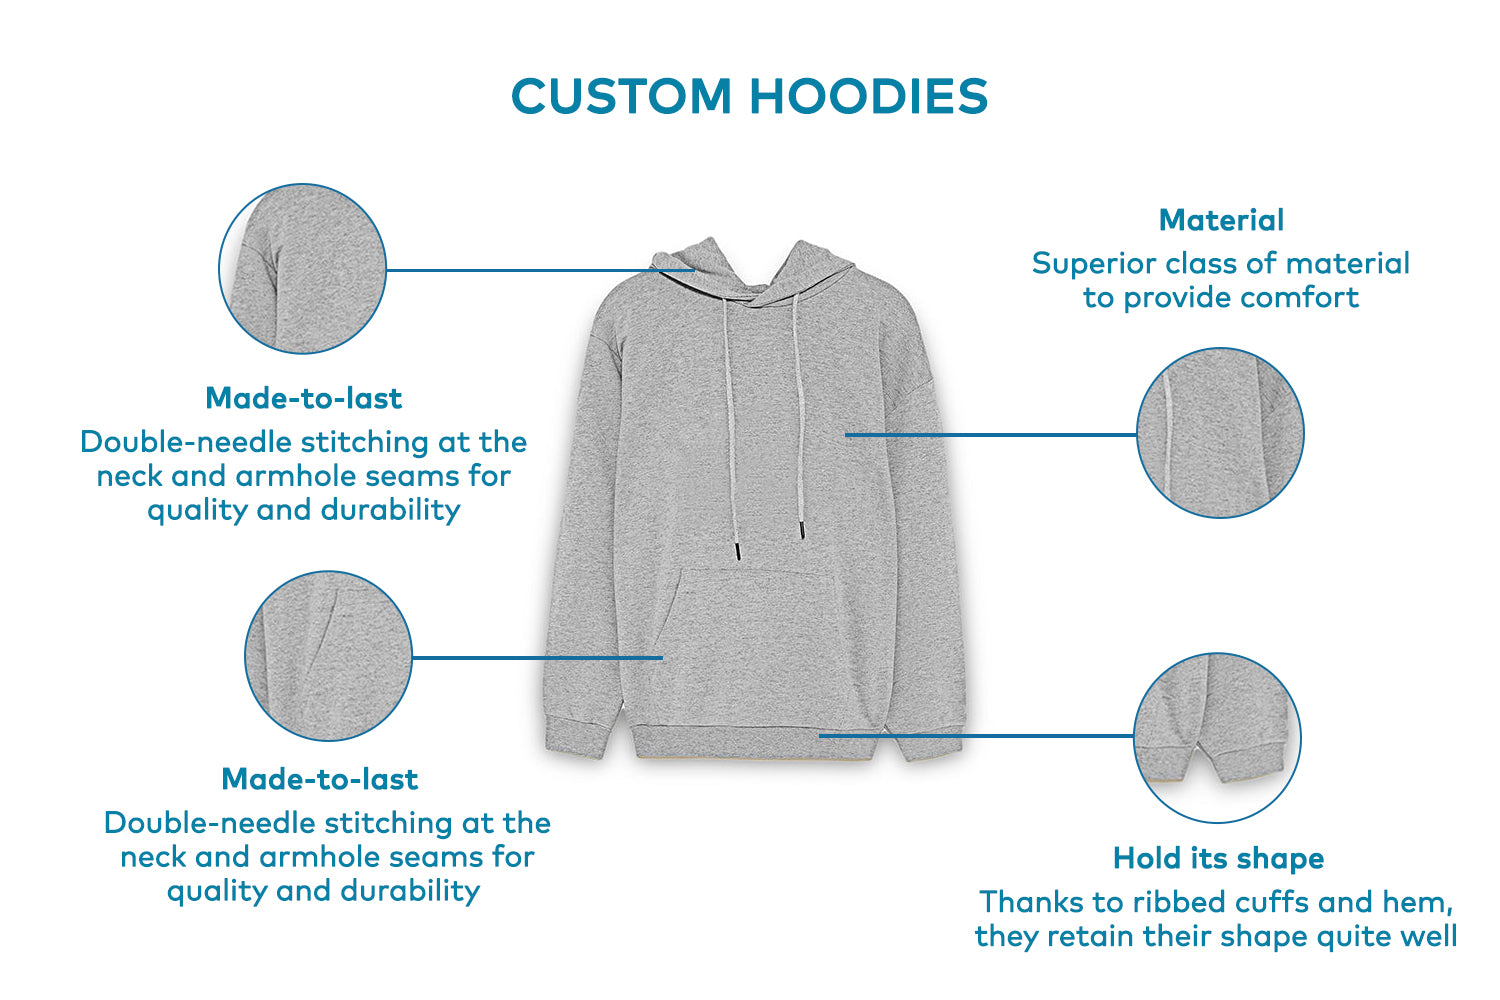 Prod description of hoodies